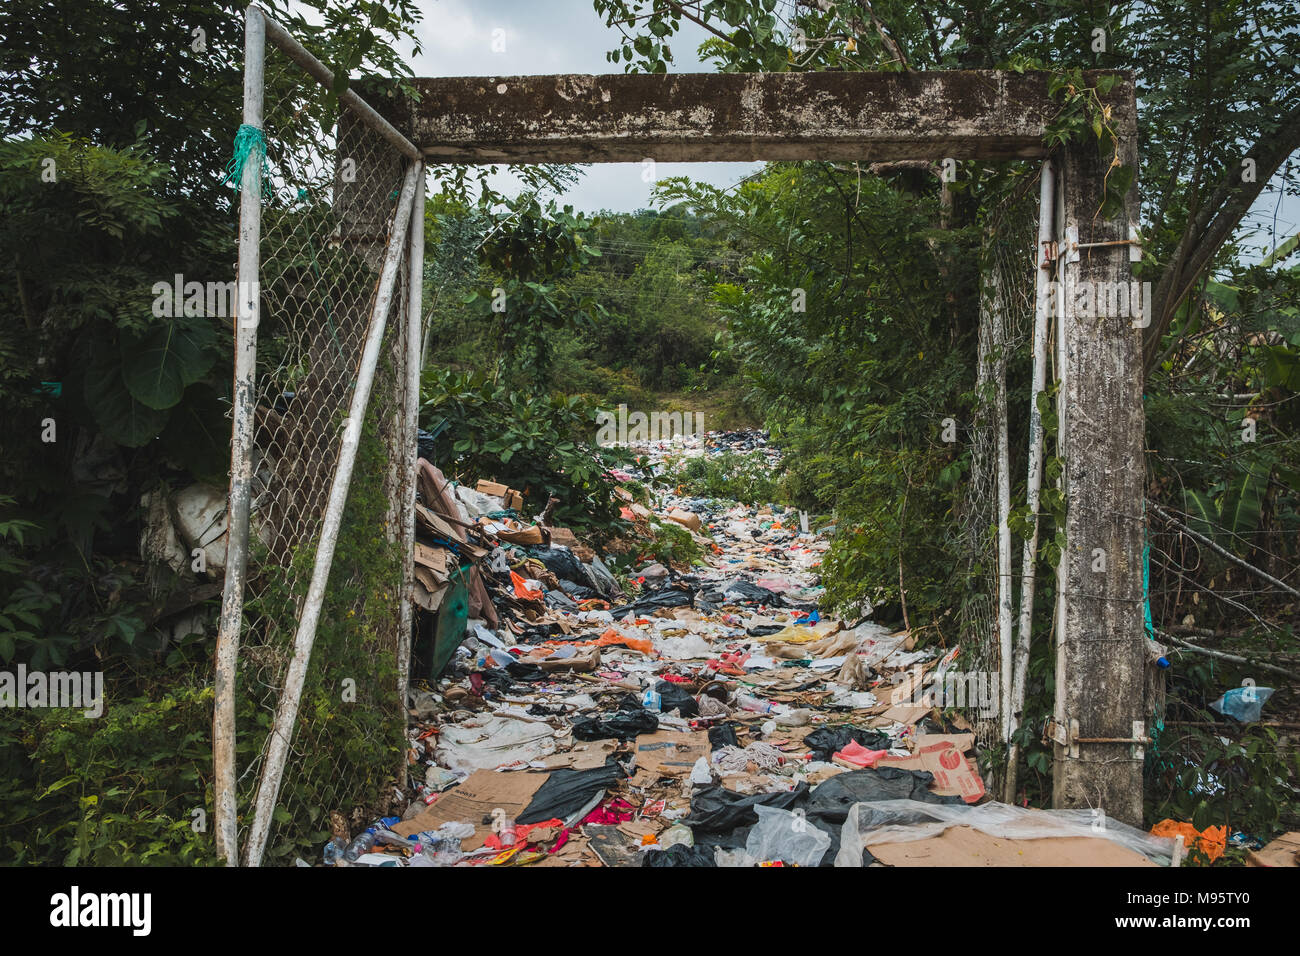 Discarica sanitaria - discarica di rifiuti, rifiuti desposit - inquinamento ambientale - Foto Stock